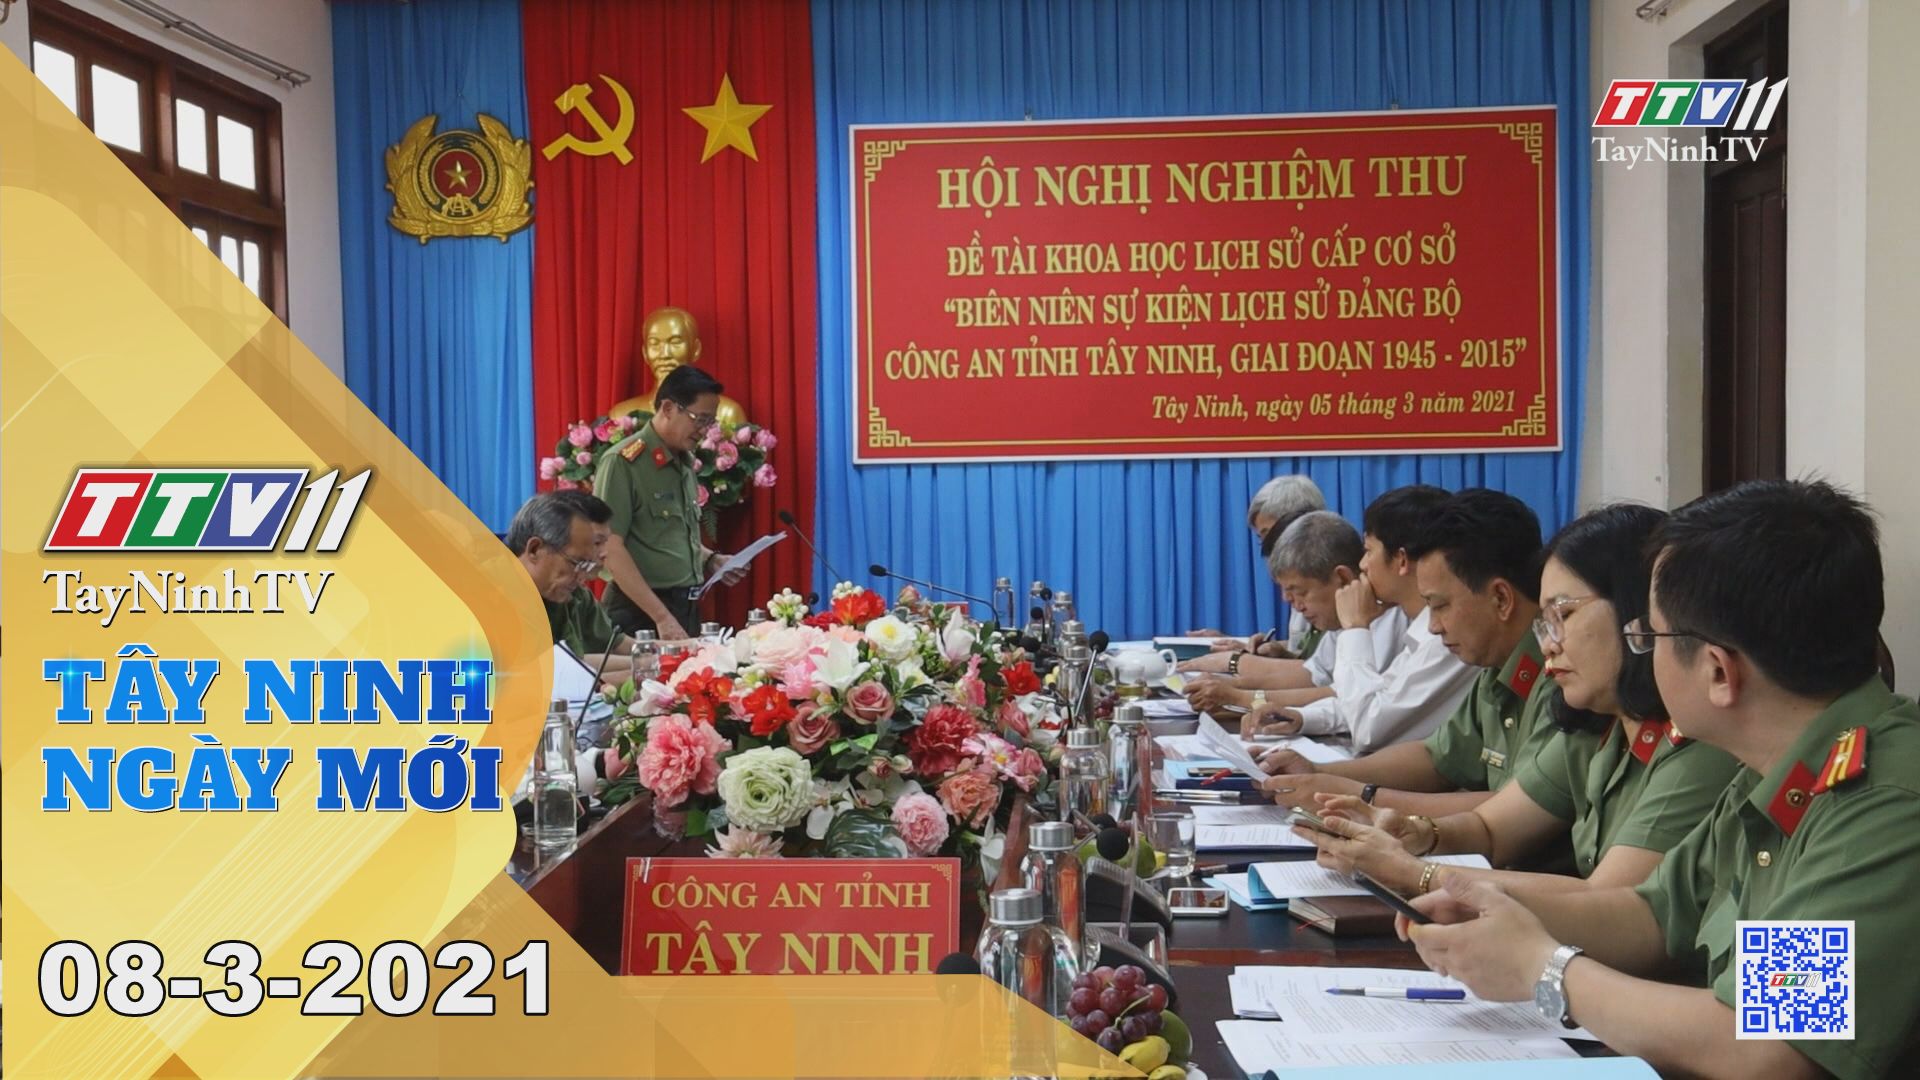 Tây Ninh Ngày Mới 08-3-2021 | Tin tức hôm nay | TayNinhTV